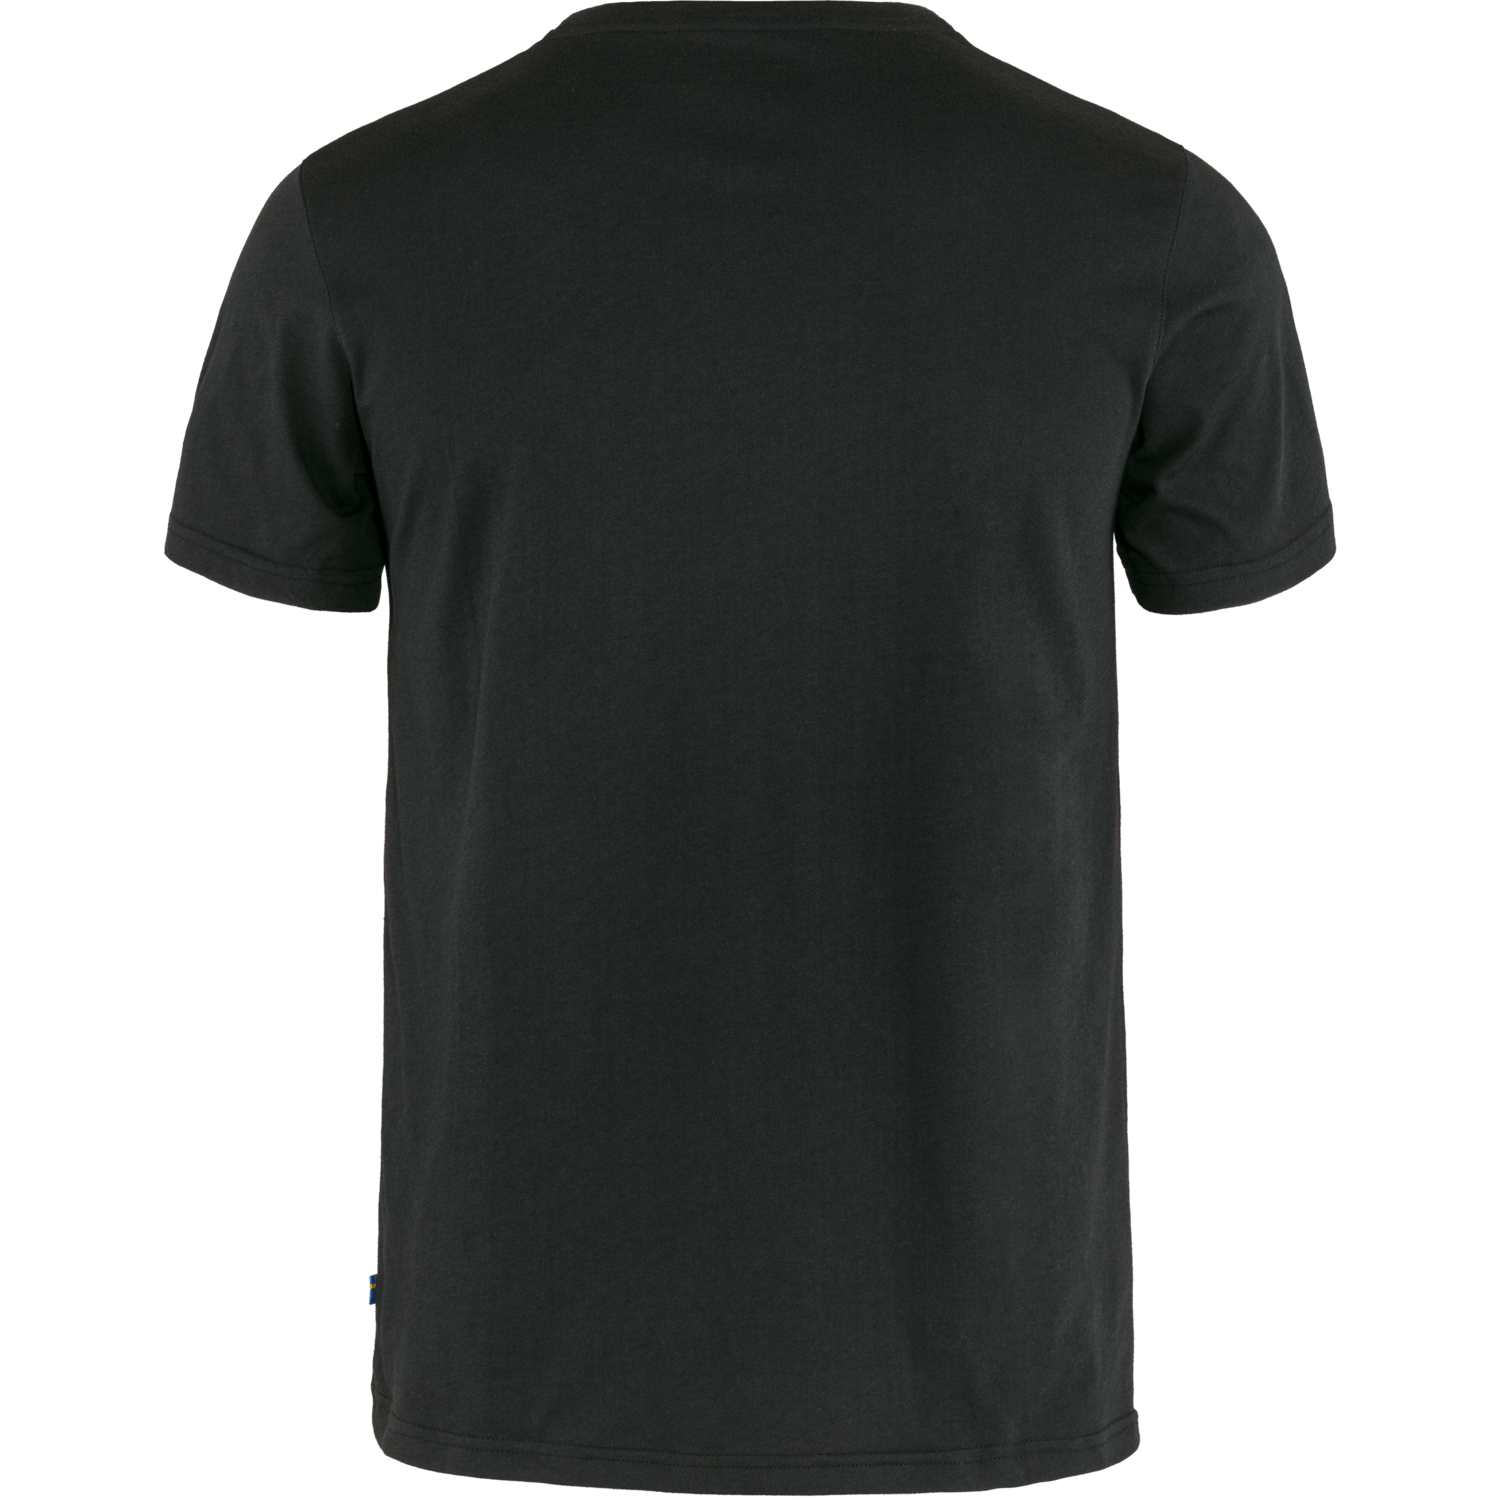 Fjällräven M's Fjällräven Logo T-shirt - Organic cotton & recycled polyester Black Shirt